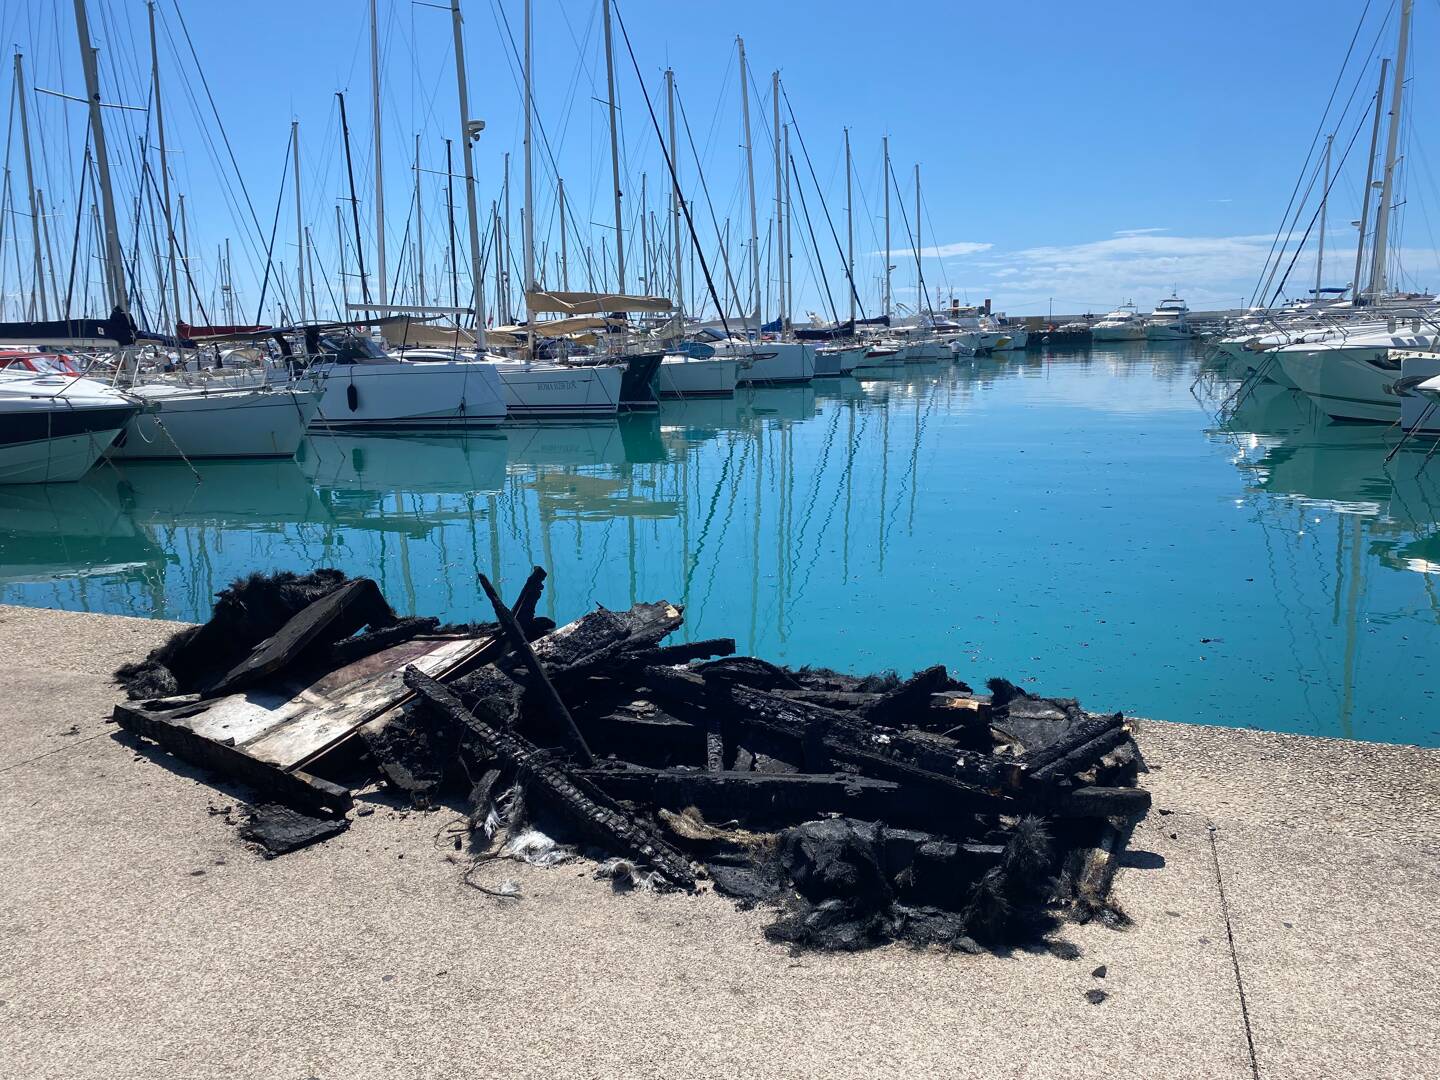 14m3de charbon provenant d’un bateau en bois qui a brûlé au port de Saint-Laurent-du-Var ont été ramassés.